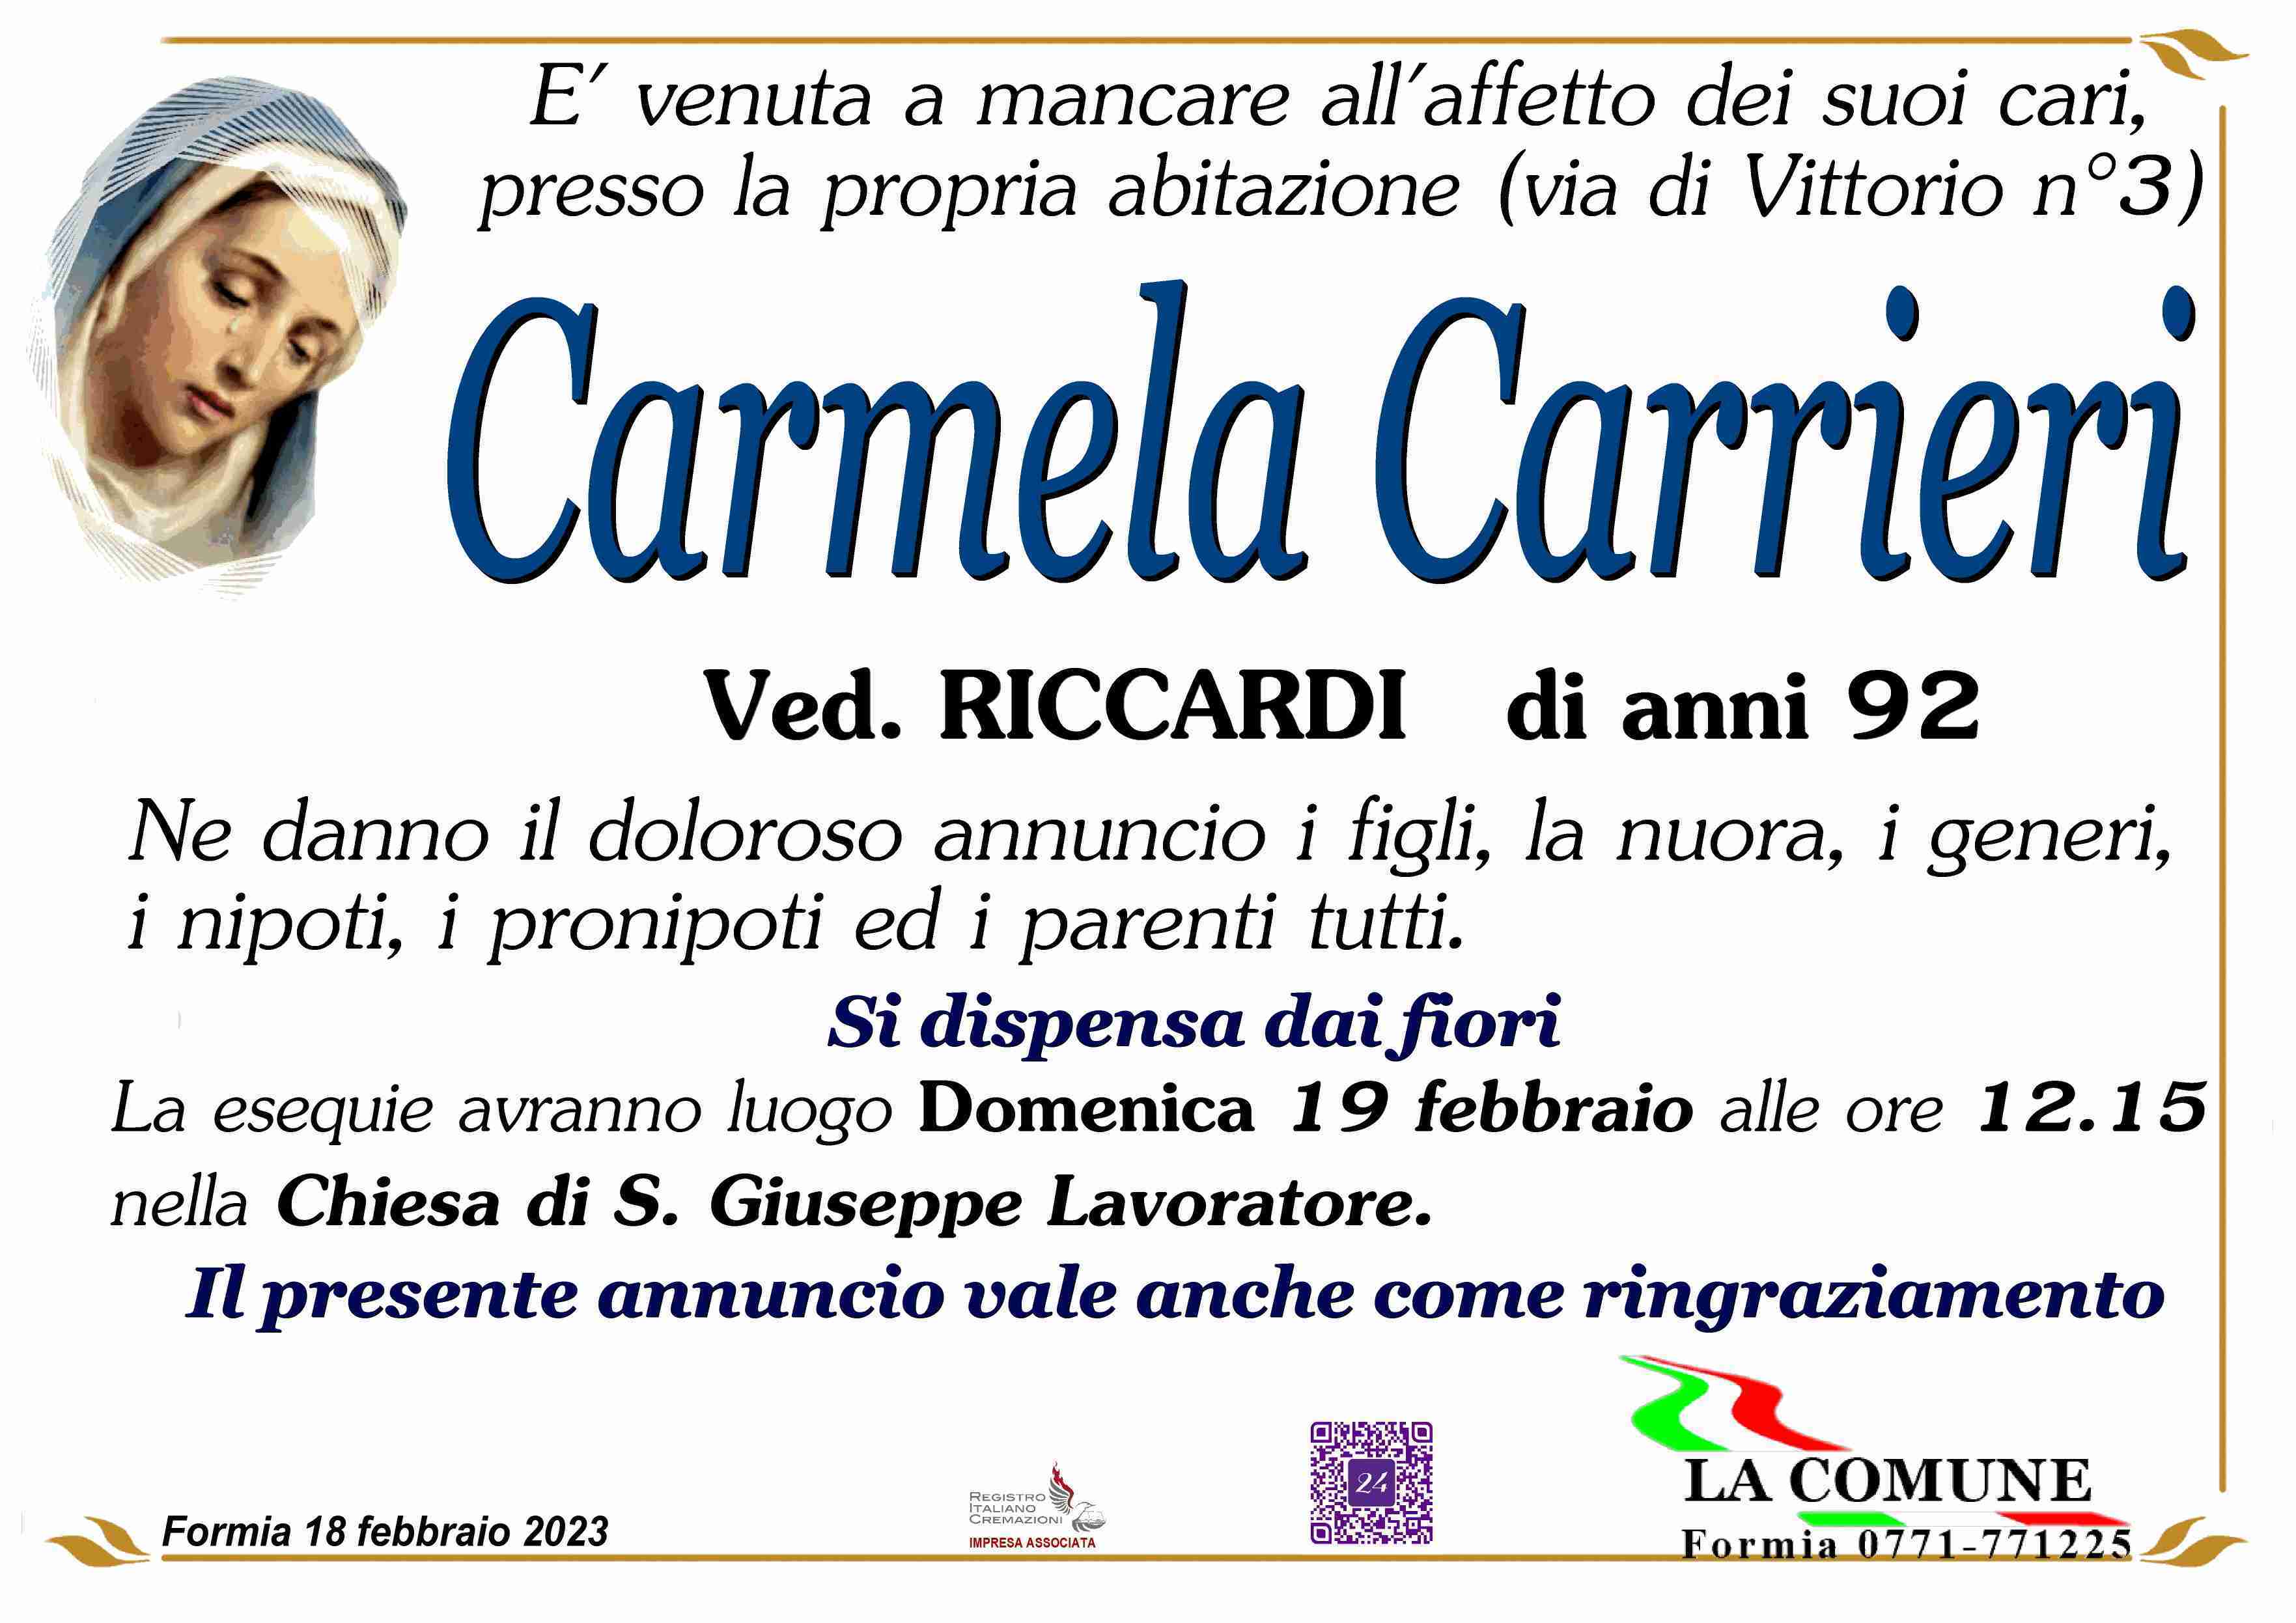 Carmela Carrieri